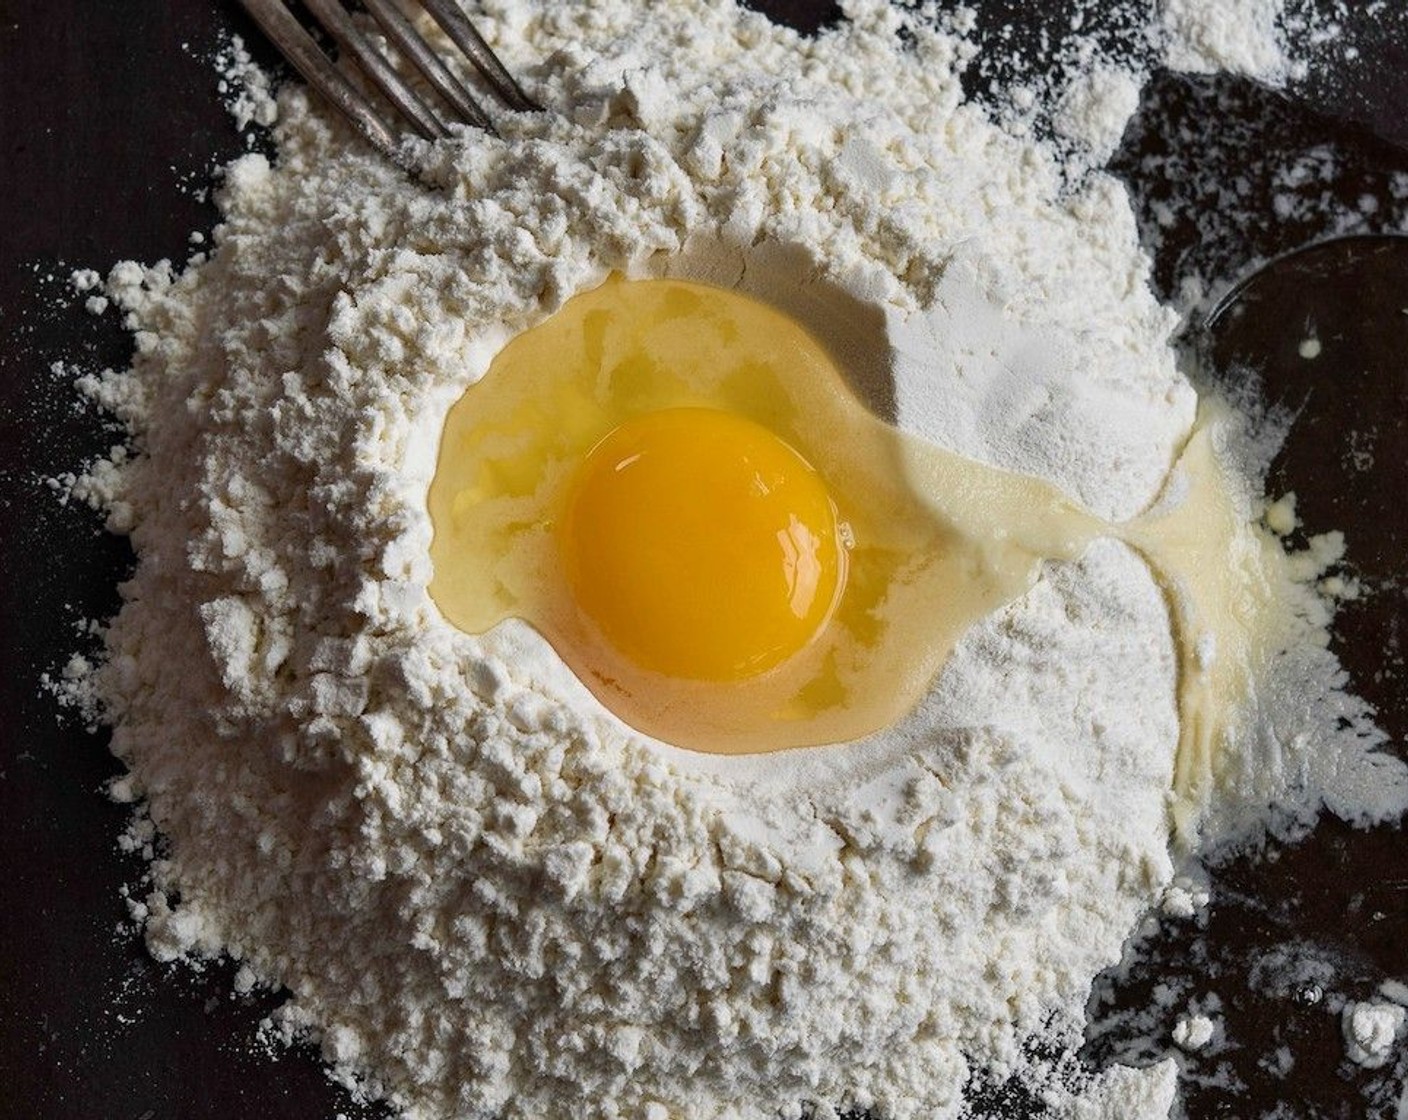 Schritt 5 Für den Nudelteig, Mehl (400 g) sieben und eine Salz (wenig) hinzufügen. Auf einer ebenen Fläche das Mehl ausstreichen und in der Mitte eine Vertiefung machen. Die Eier (4) schlagen und hineingeben und mit einer Gabel in das Mehl einarbeiten, bis ein klebriger Teig entsteht.